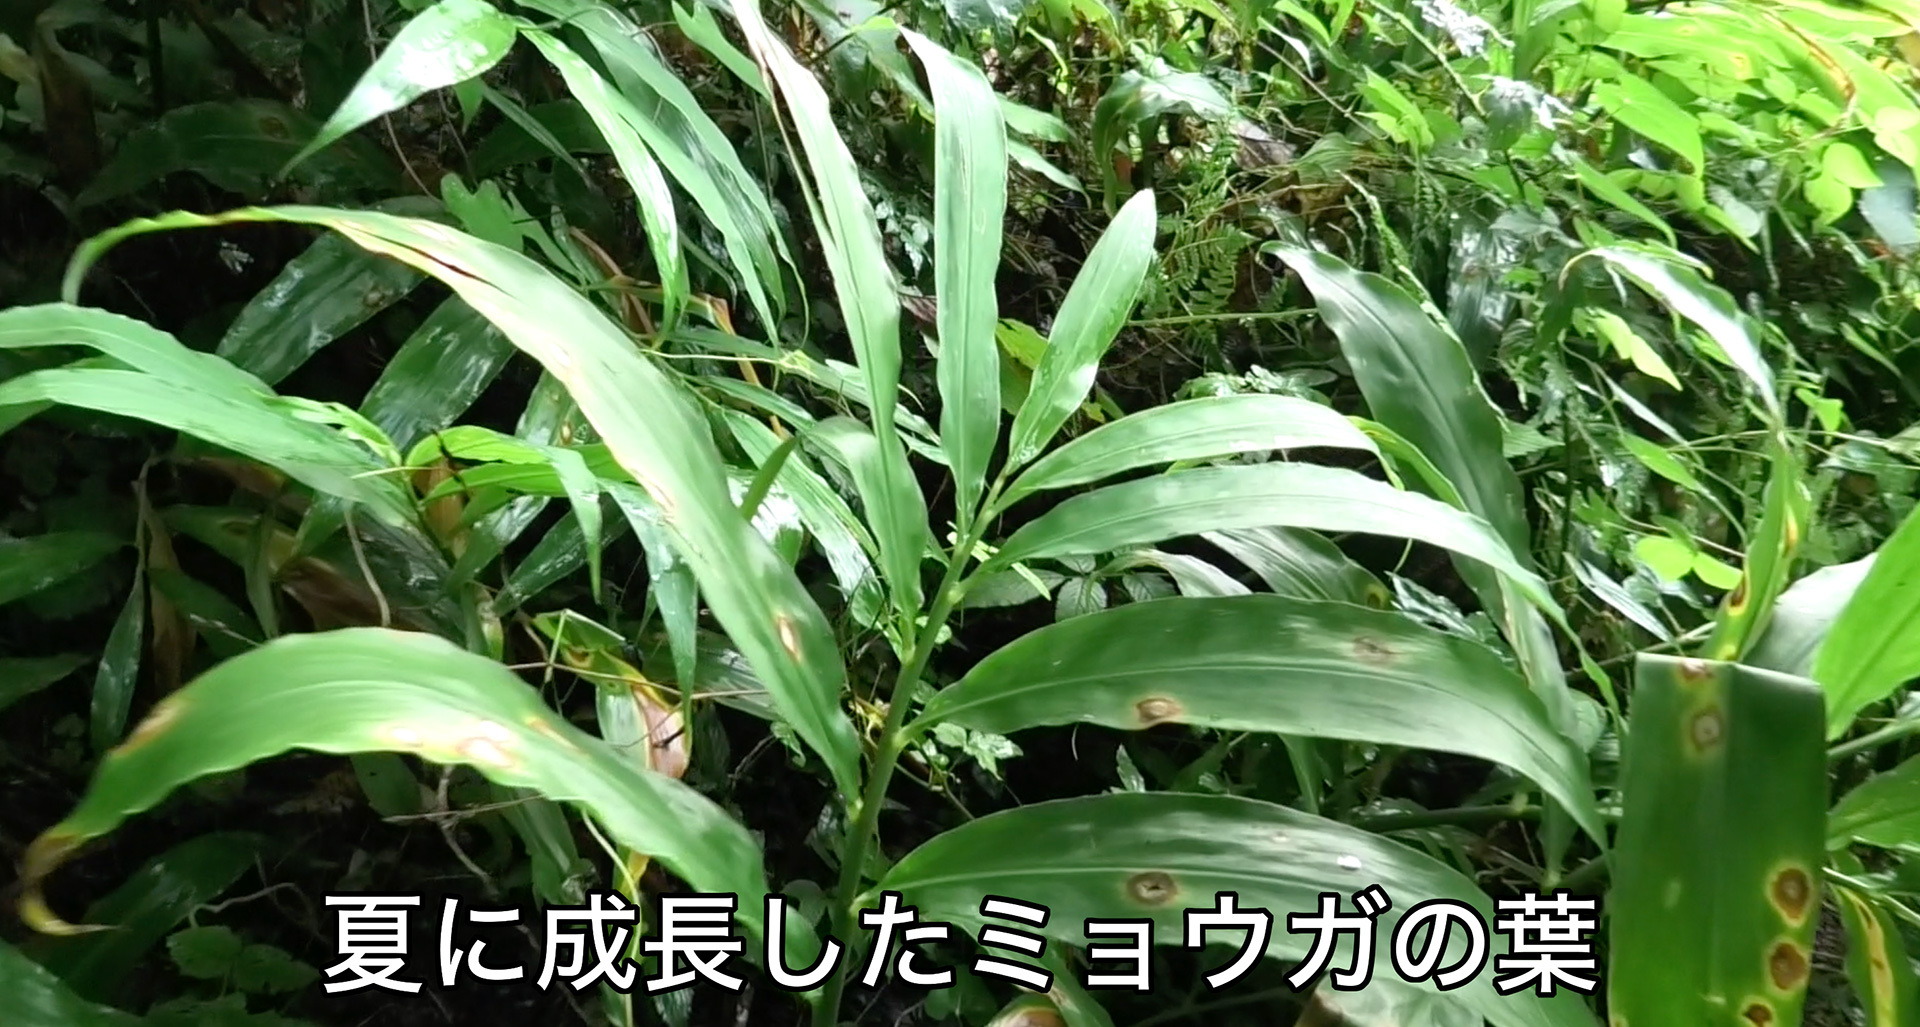 ミョウガの葉は生姜の葉とよく似ている